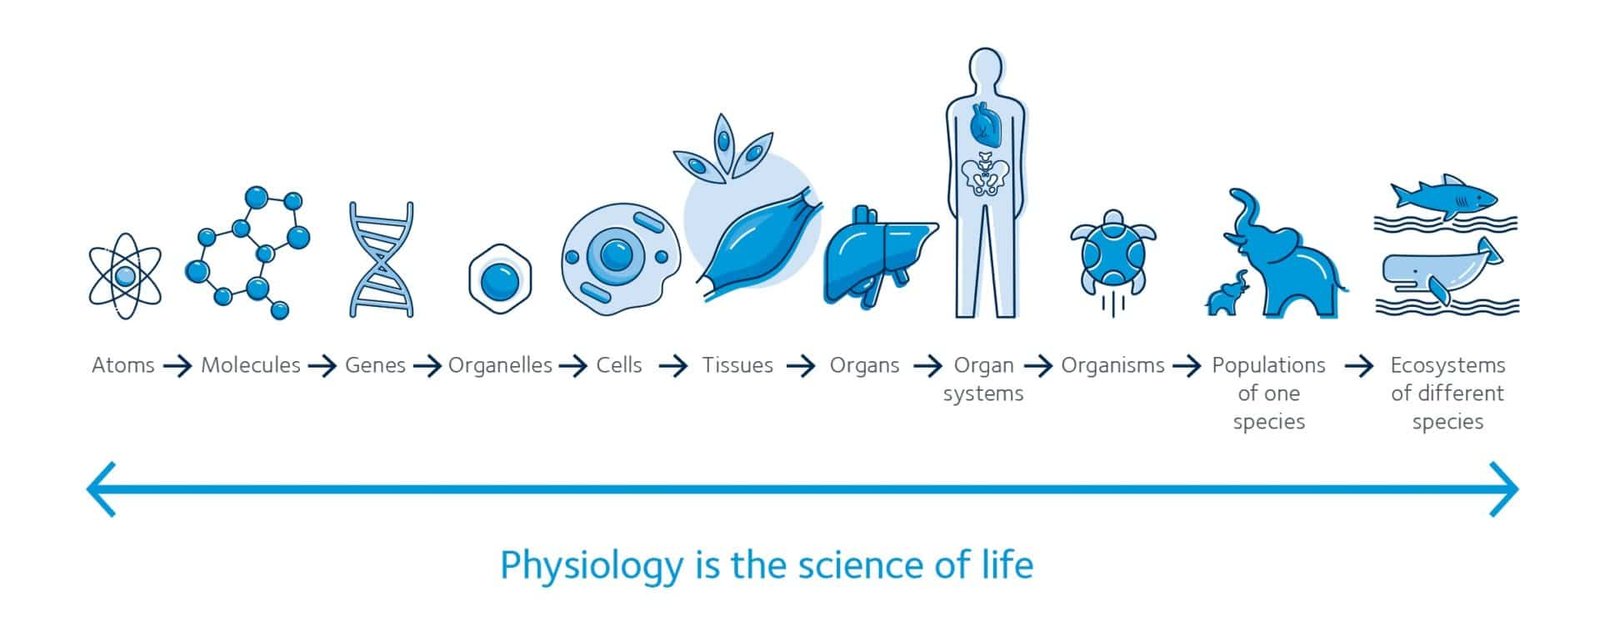 La Fisiología es la ciencia de la vida